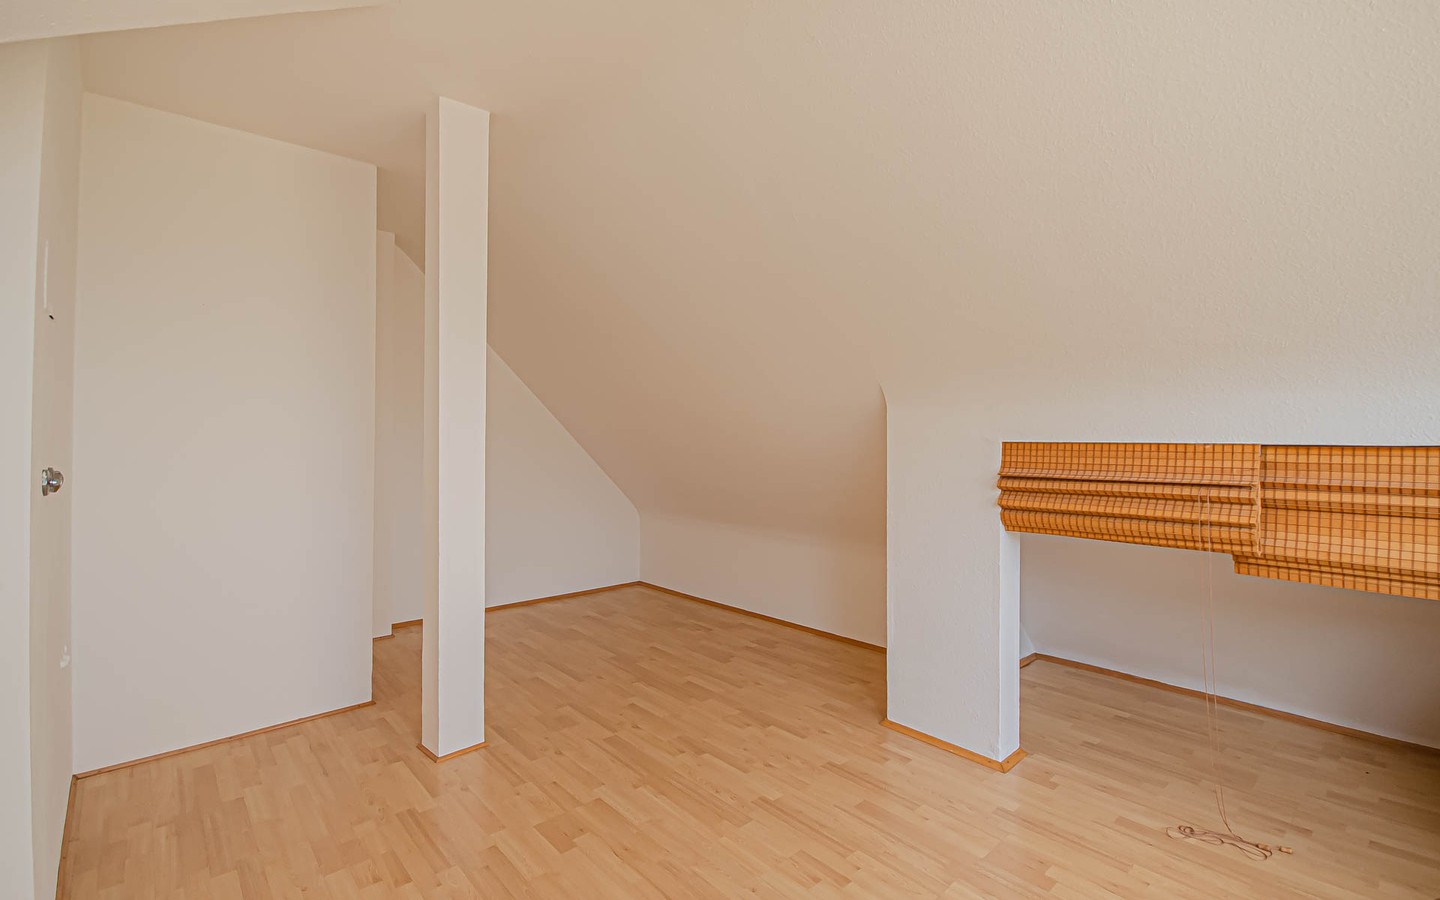 Studio - Offene und helle Maisonettewohnung in zentraler Lage in Heidelberg-Rohrbach